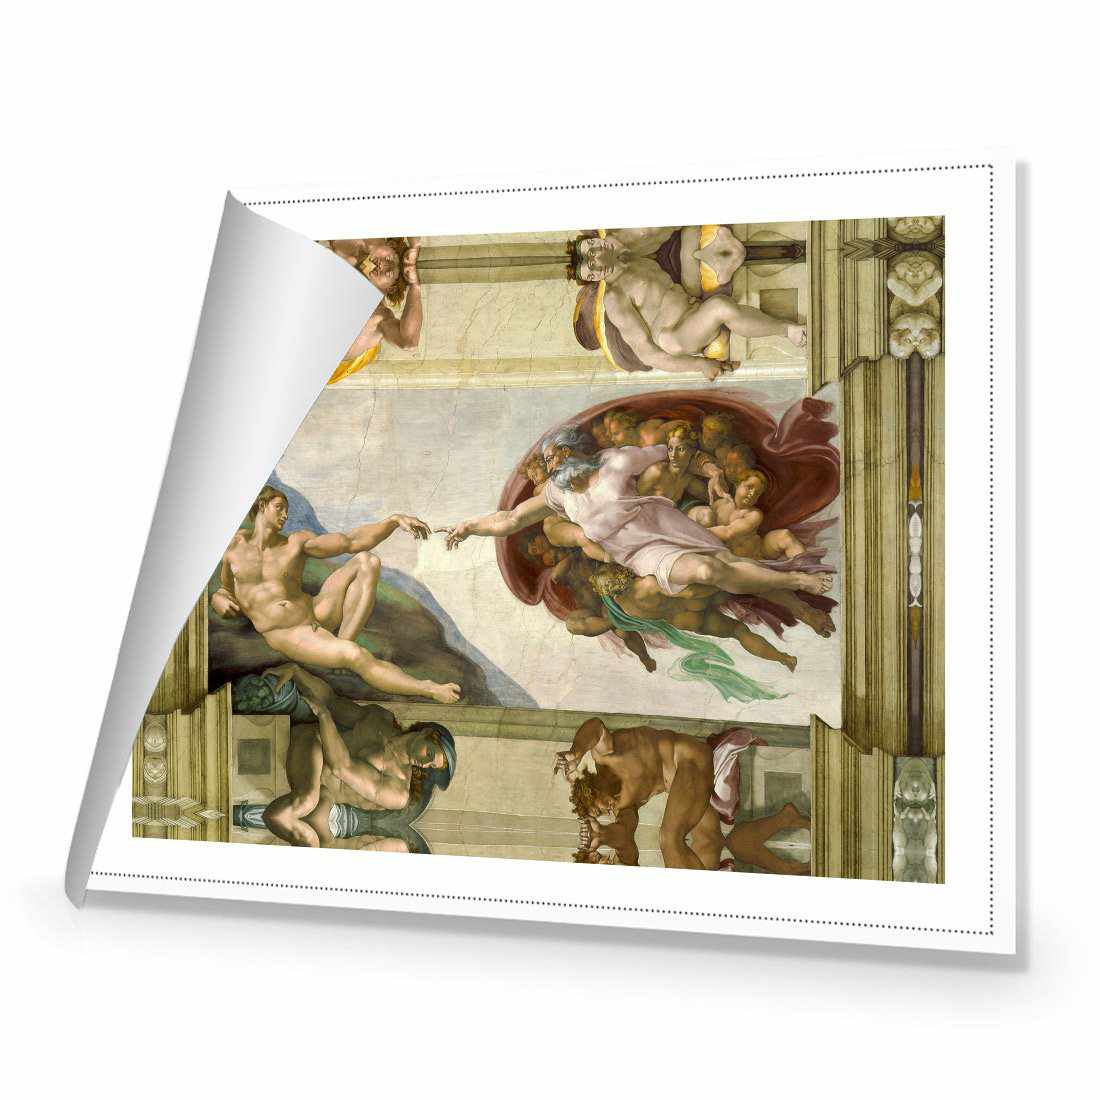 Creation Of Adam - Michelangelo Canvas Art-Canvas-Wall Art Designs-45x30cm-Rolled Canvas-Wall Art Designs